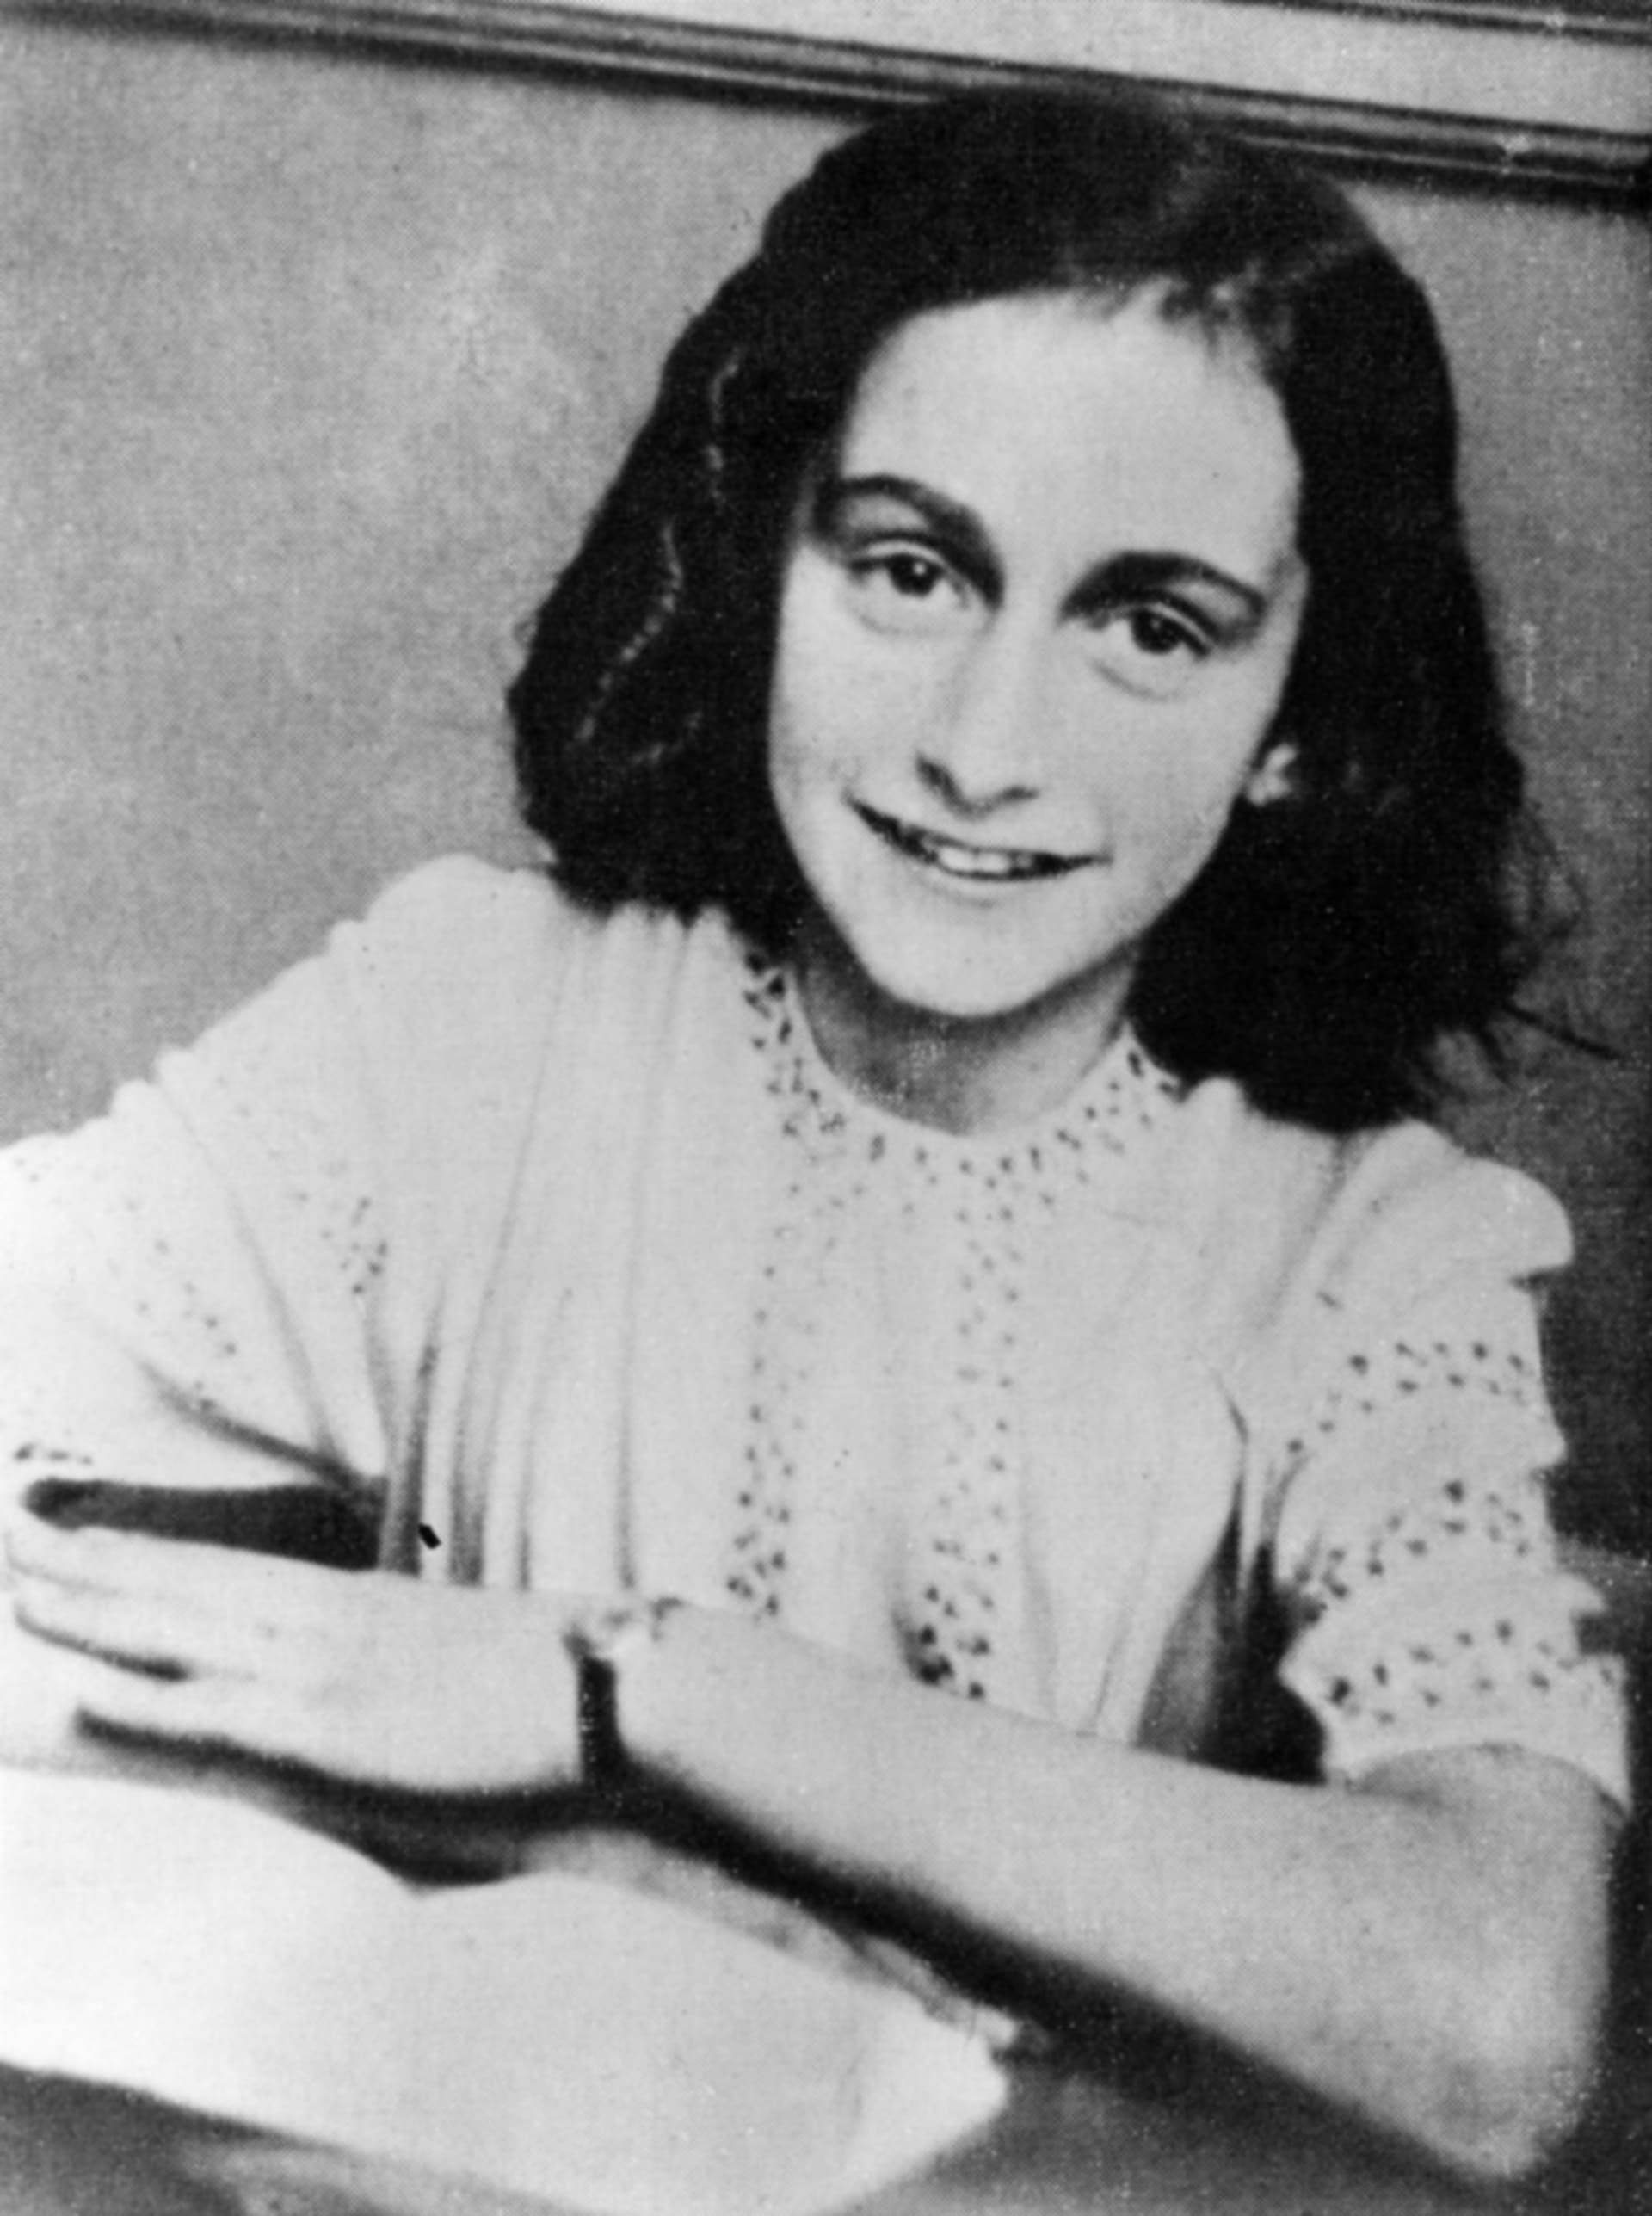 Anne Franková na školním snímku z roku 1941